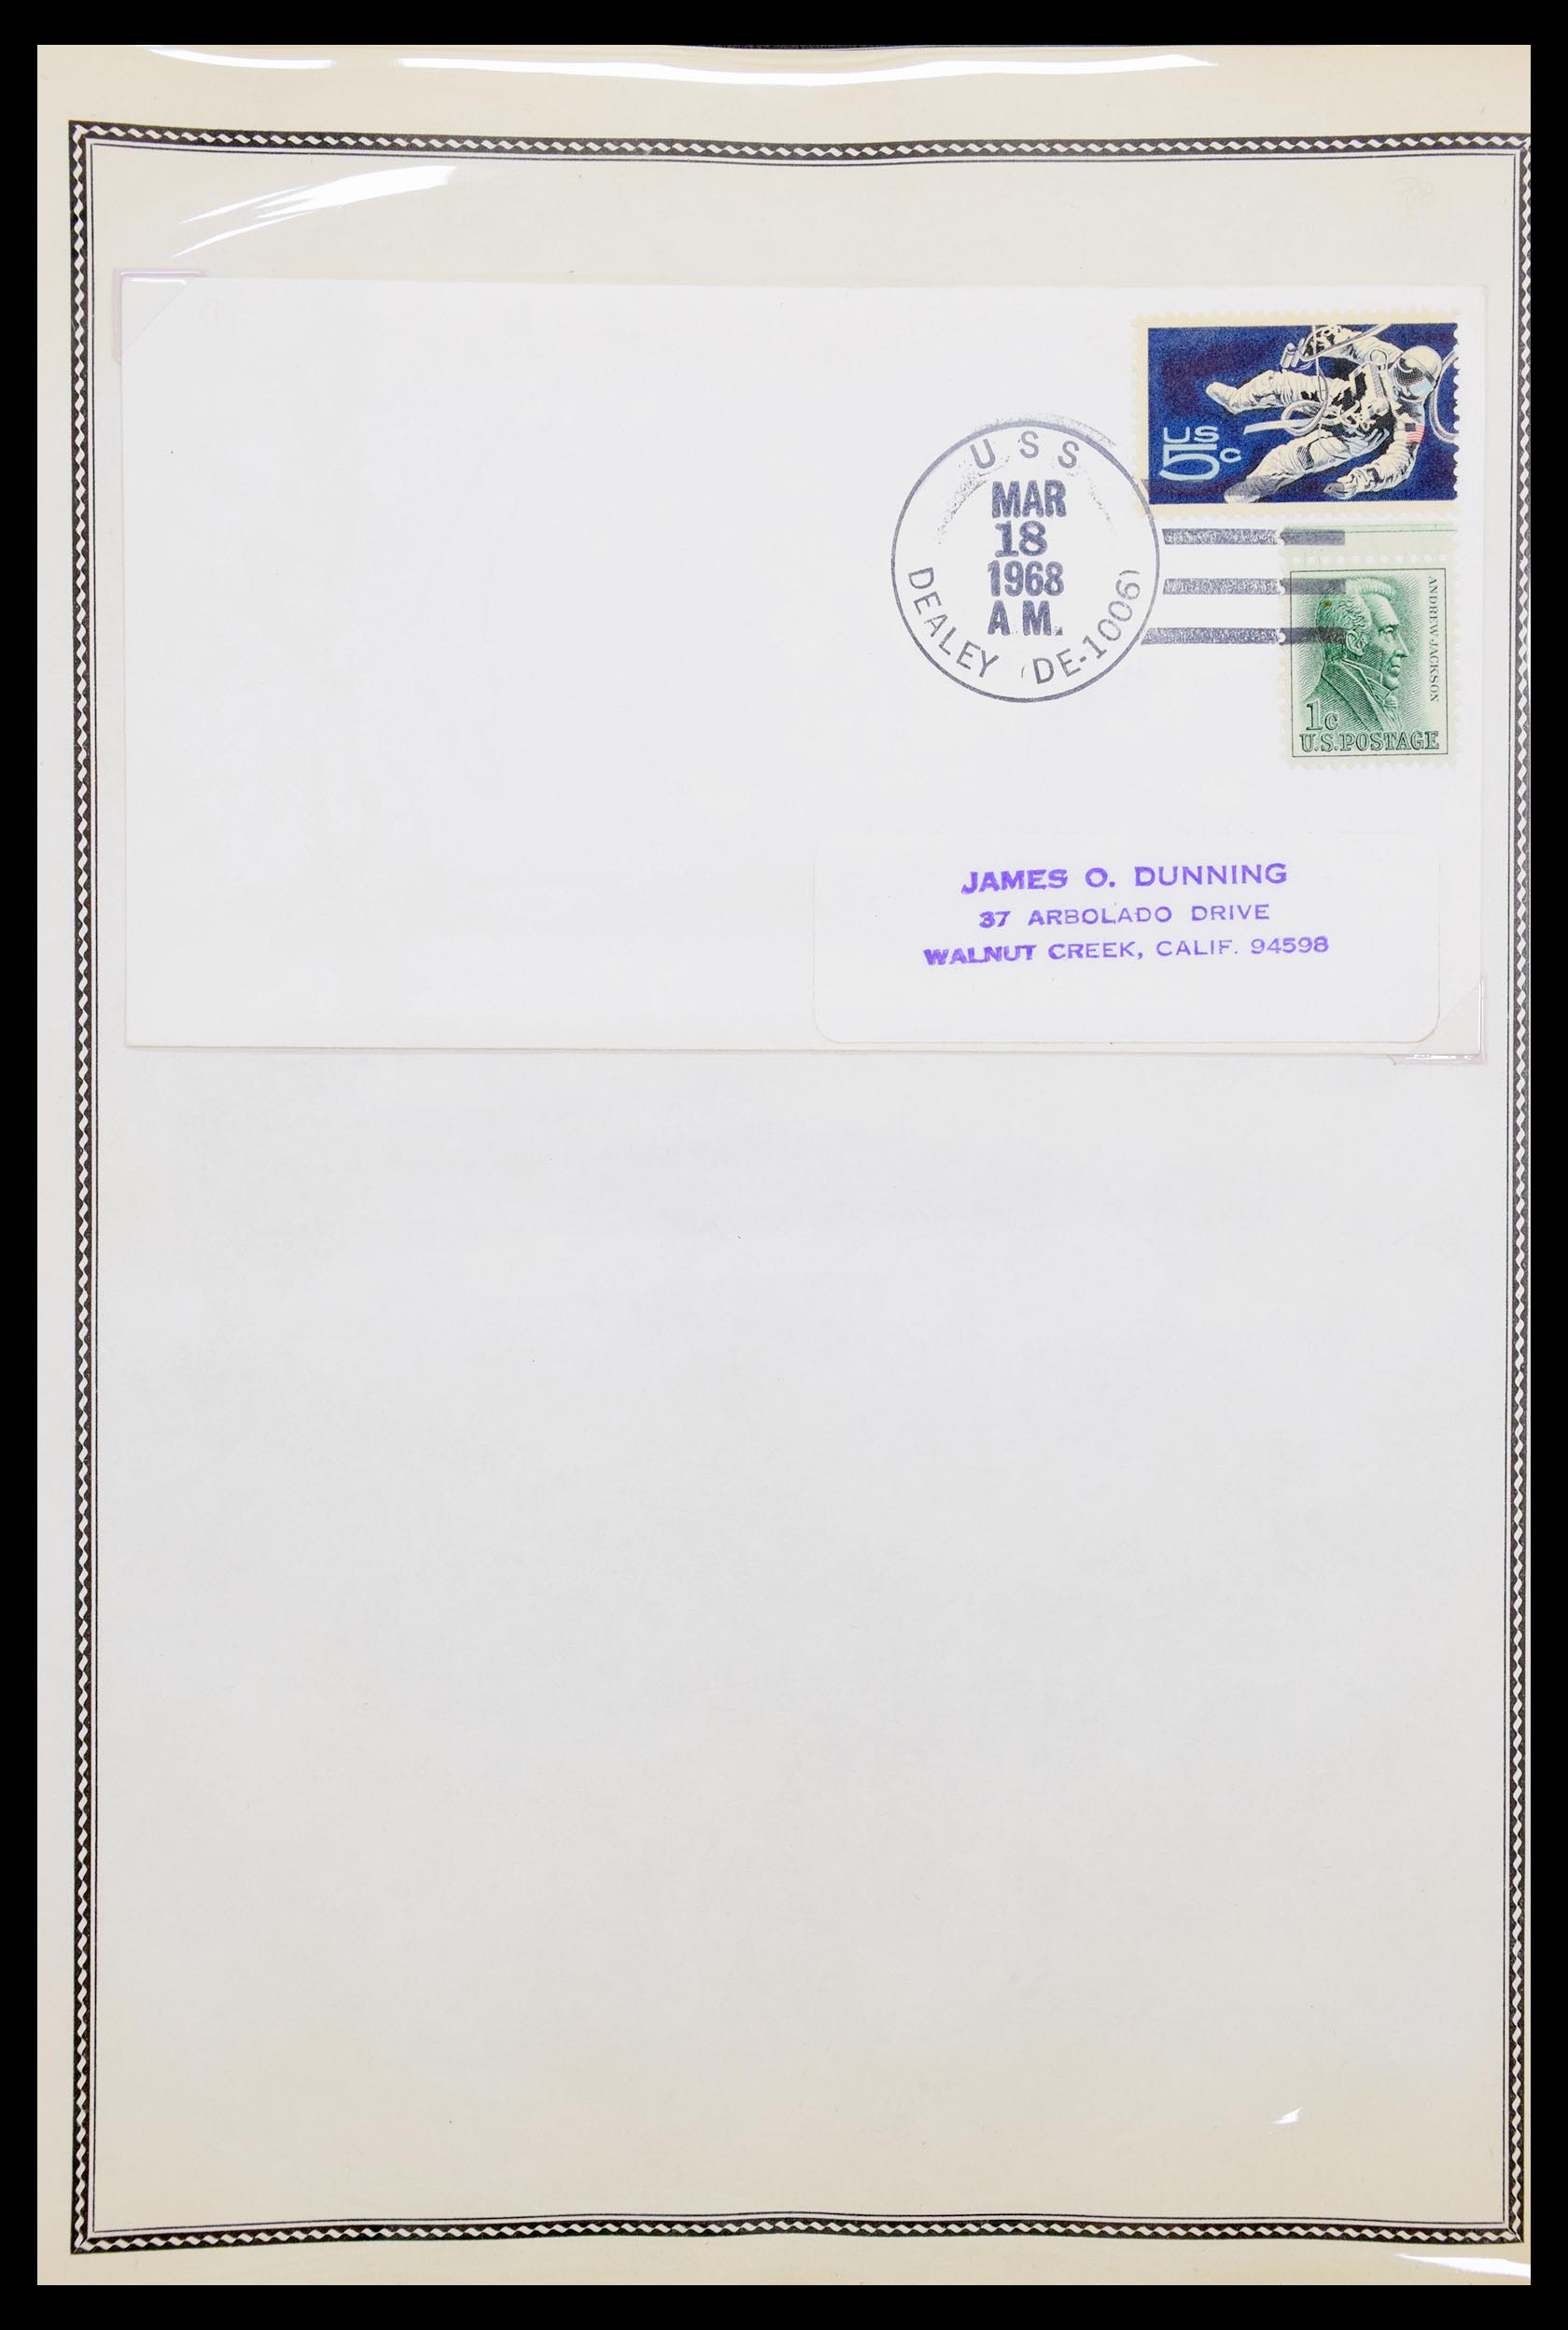 30341 069 - 30341 USA scheepspost brieven 1930-1970.